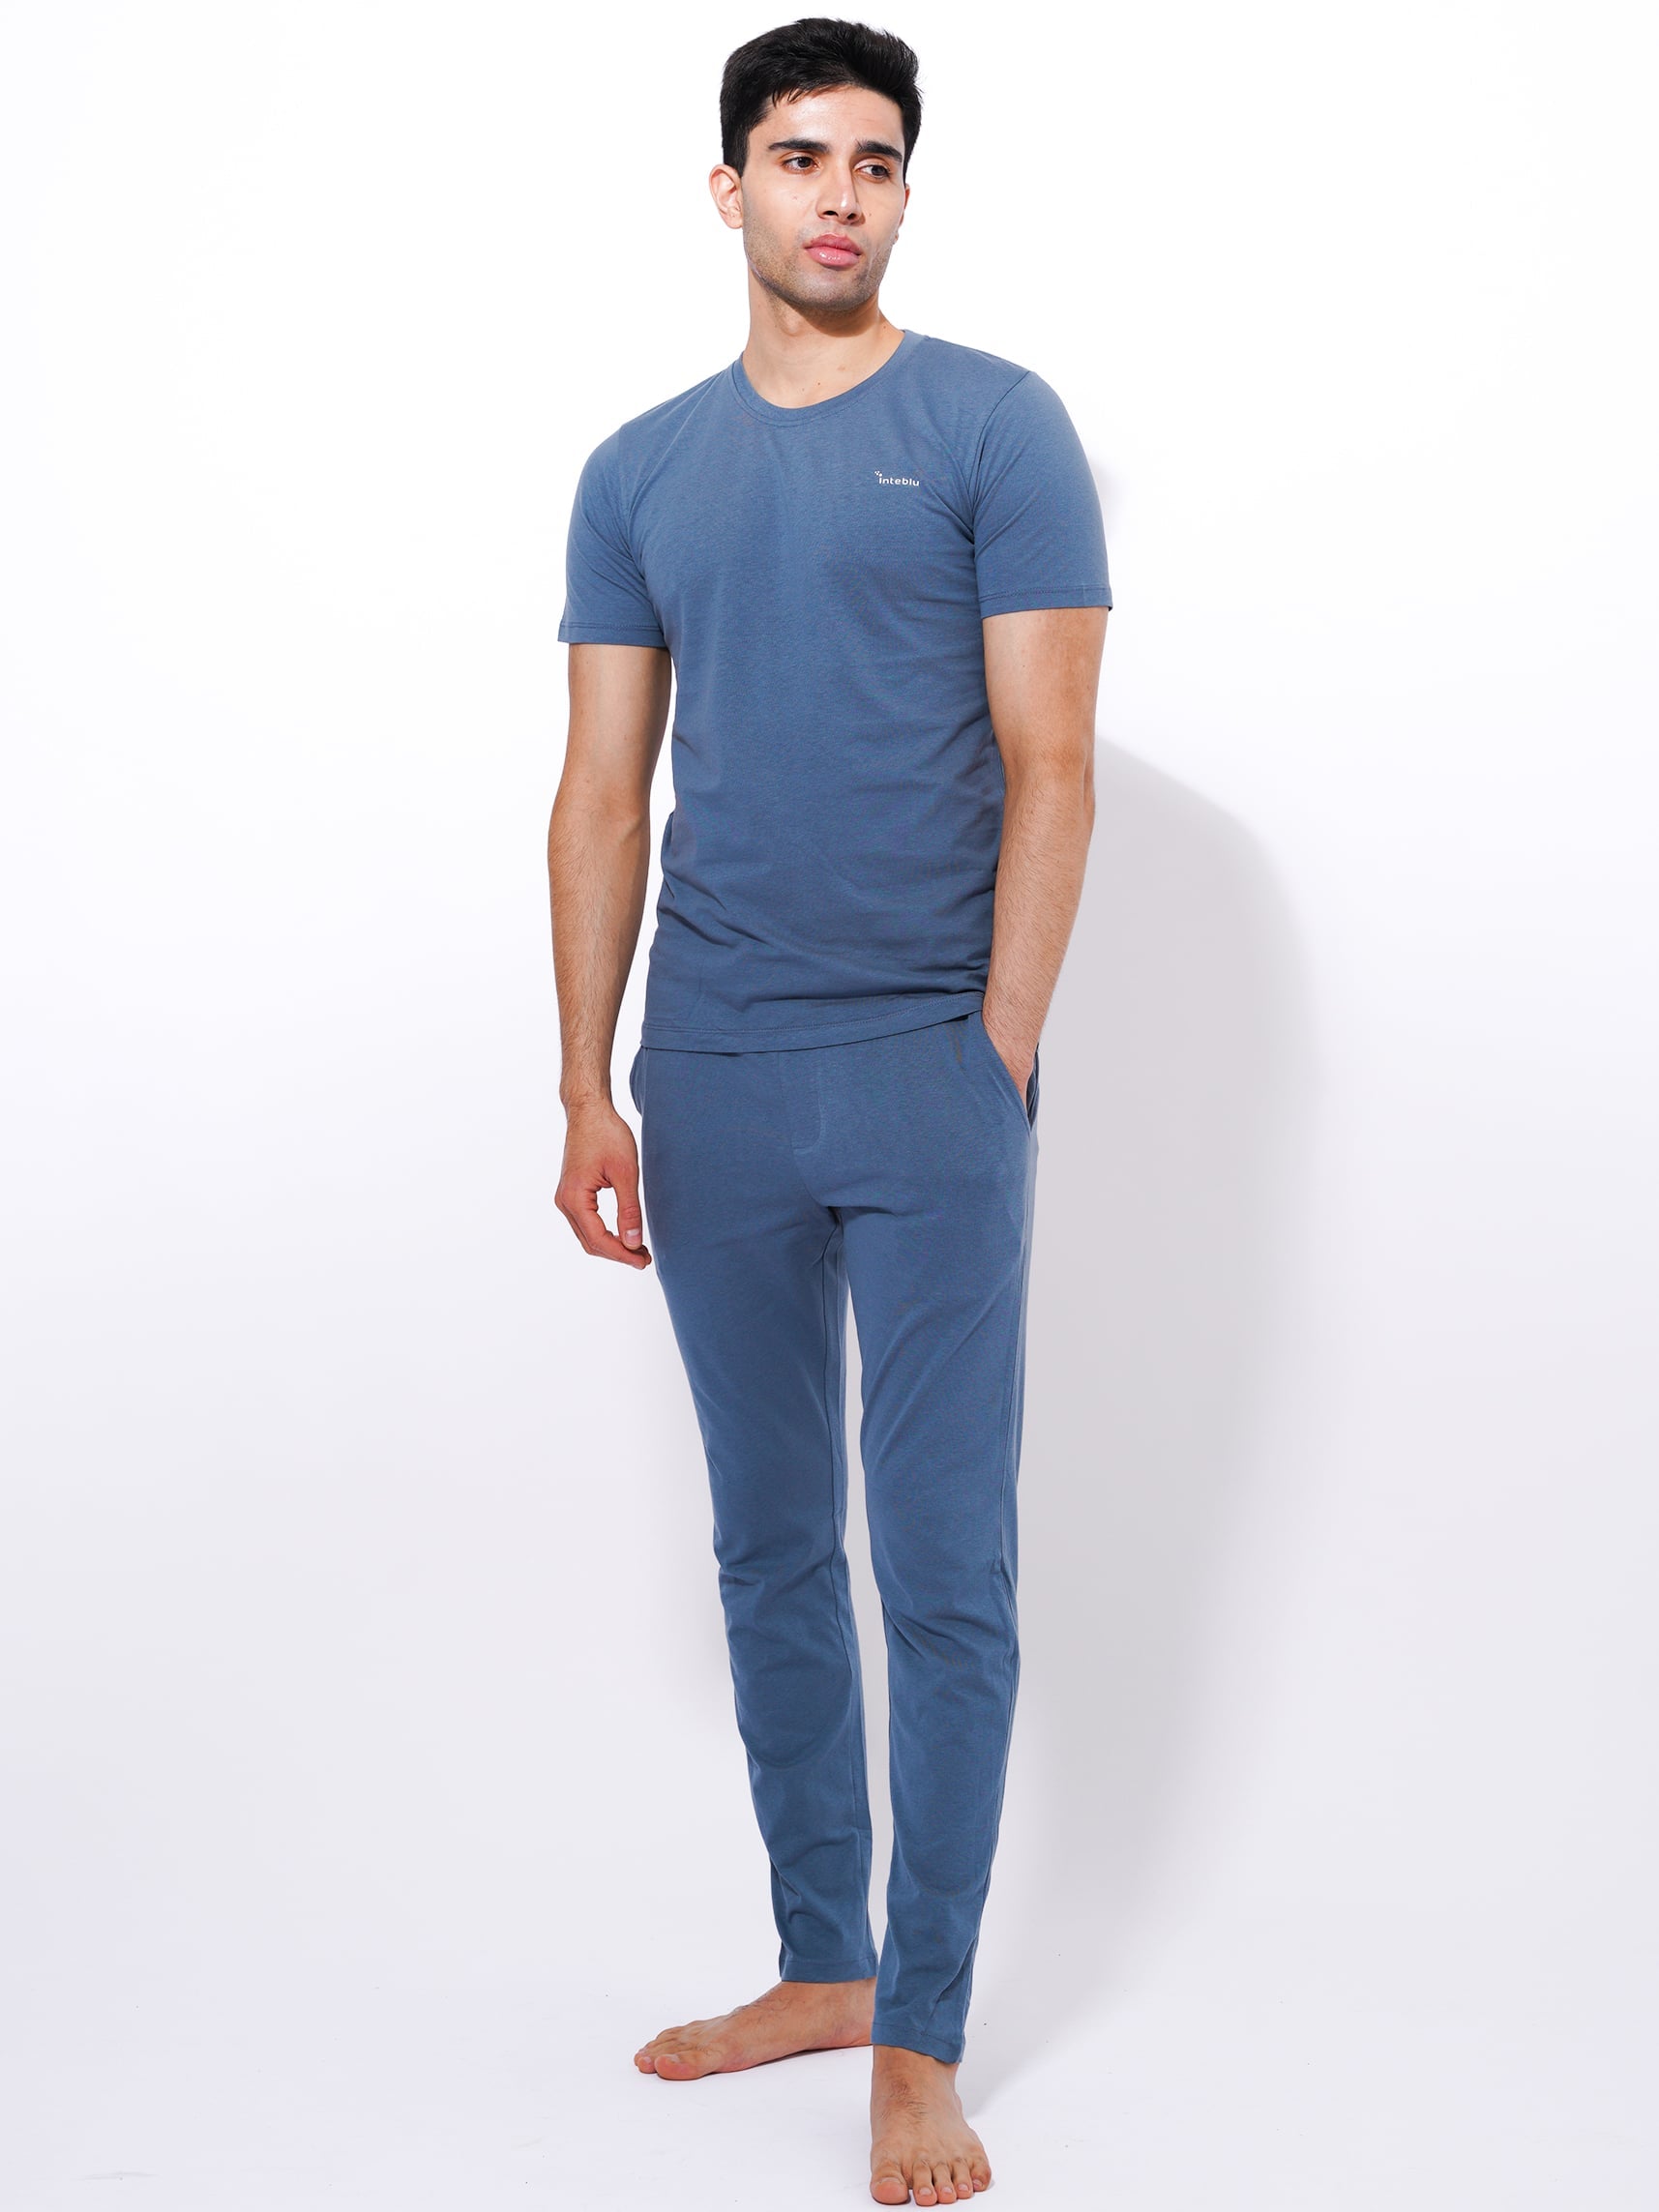 Men's Summer T-Shirt & Full Pants Set in Goblin Blue - inteblu